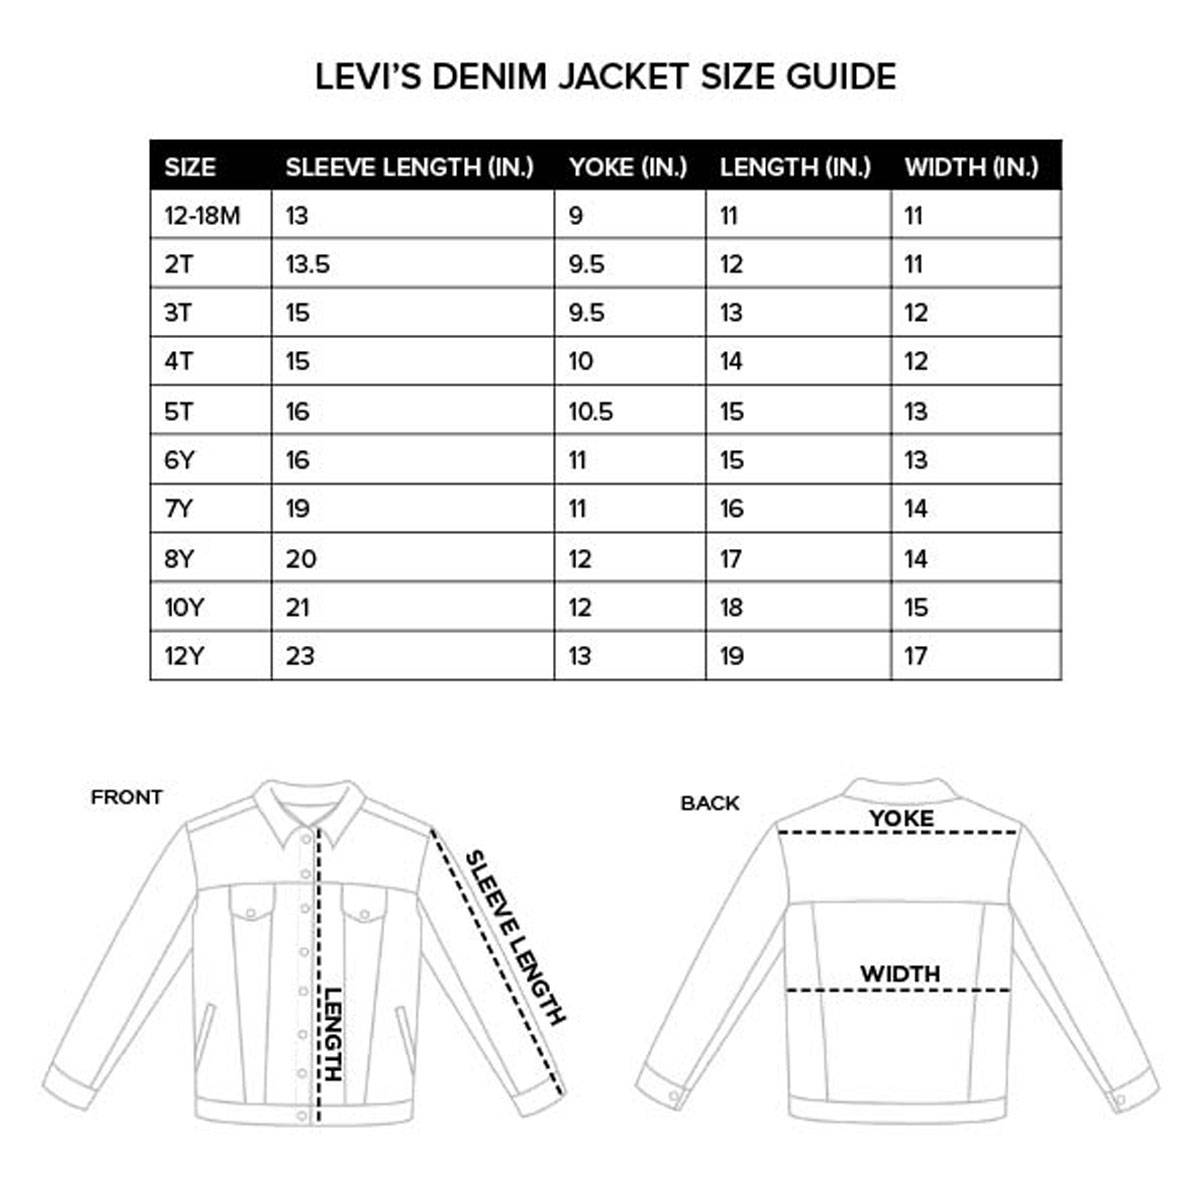 48 50 размер мужской куртки. Размерная сетка Levis мужские куртки. Размерная сетка джинсовых курток Levis. Размерная сетка джинсовая куртка Sherpa Levis мужские. Размерная сетка левайс куртки женские.